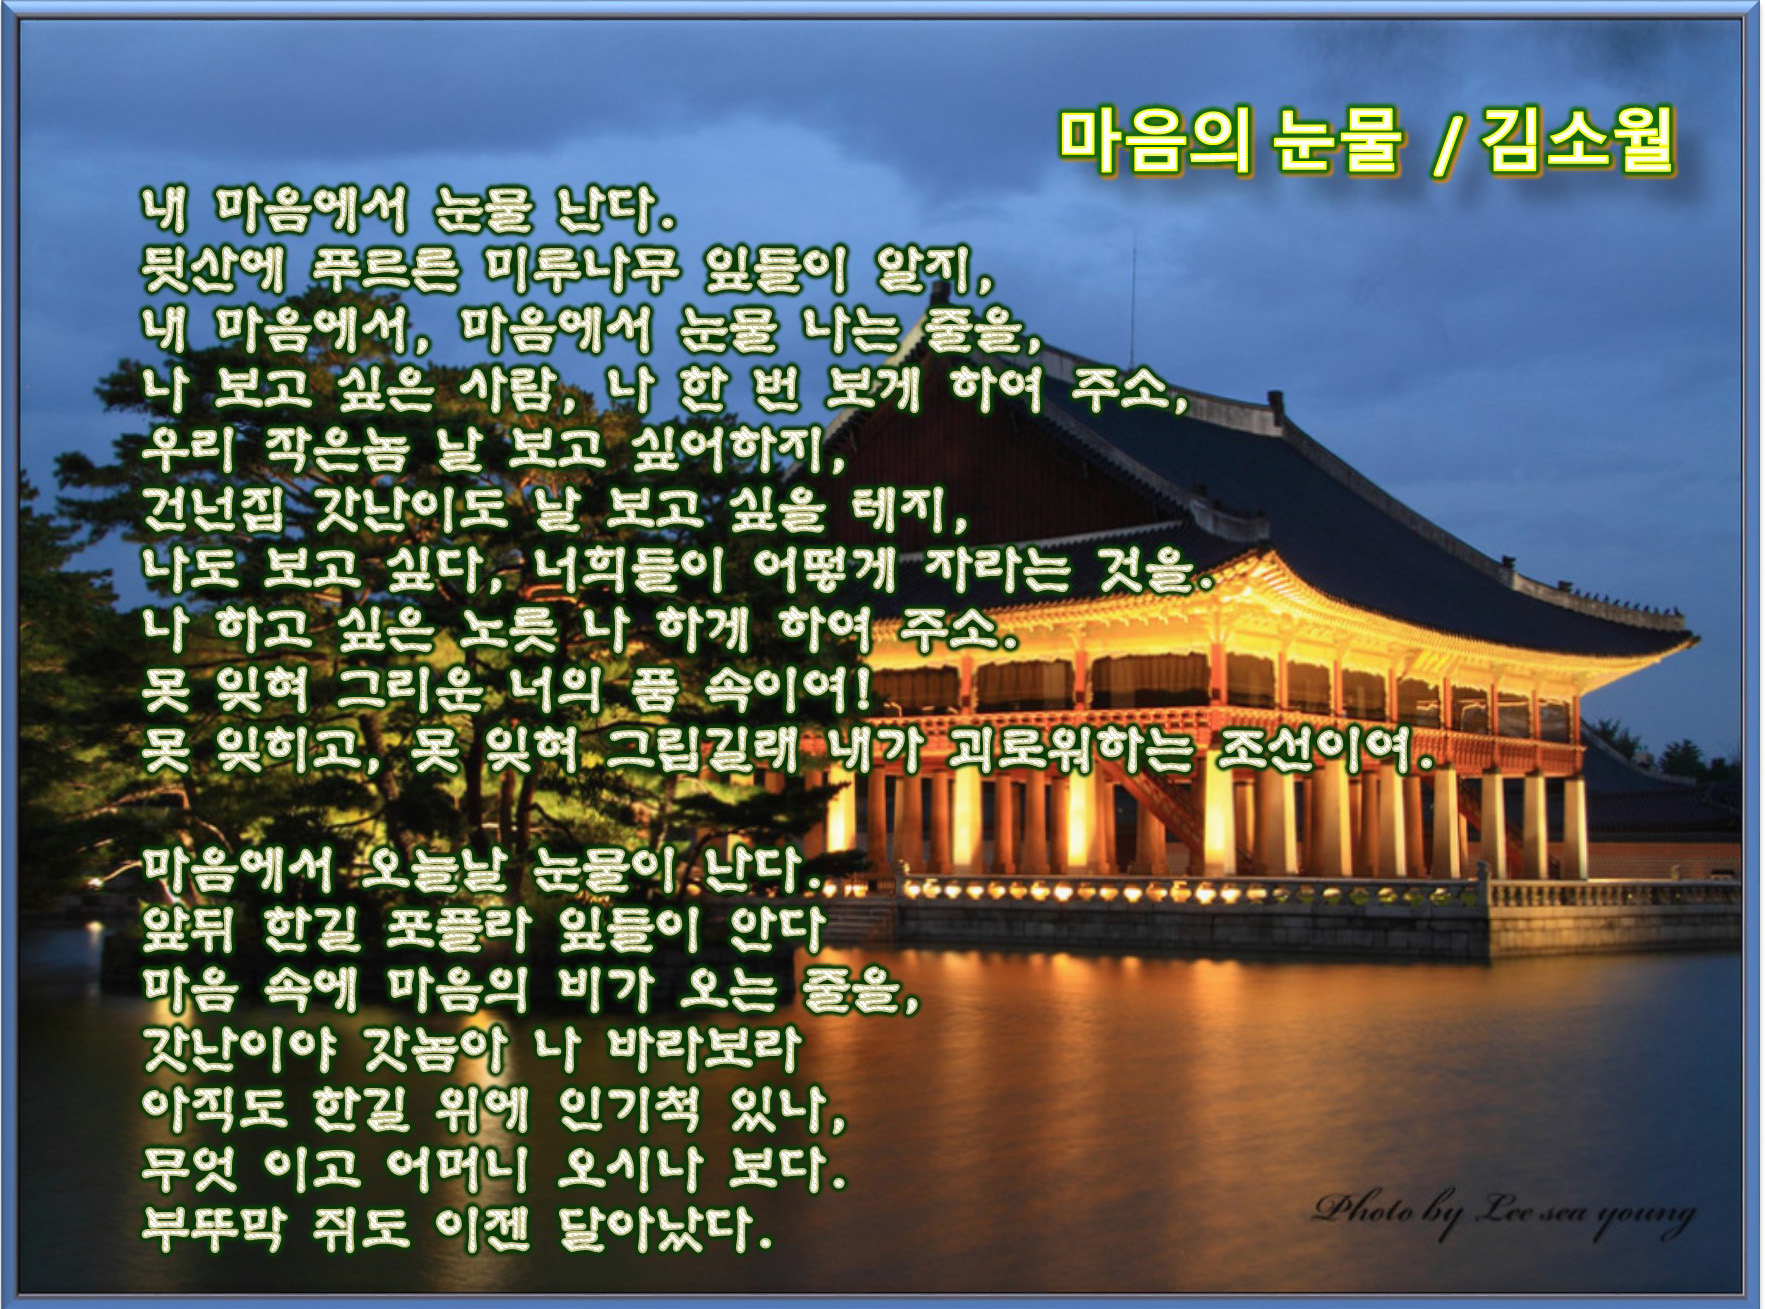 이 글은 파워포인트에서 만든 이미지입니다.  마음의 눈물 / 김소월